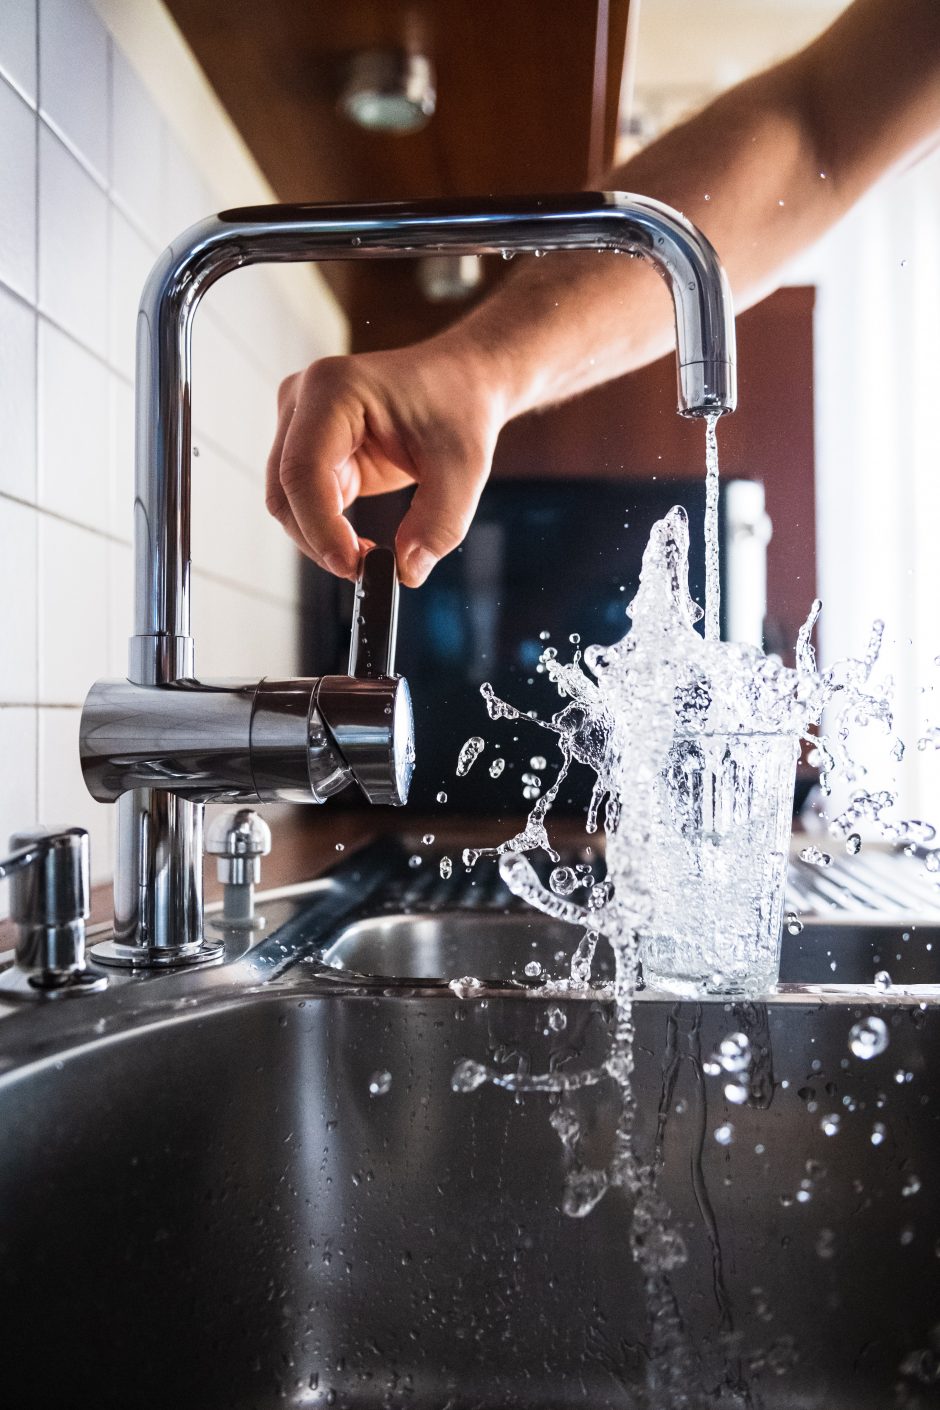 Koks vanduo bėga iš čiaupo jūsų namuose?